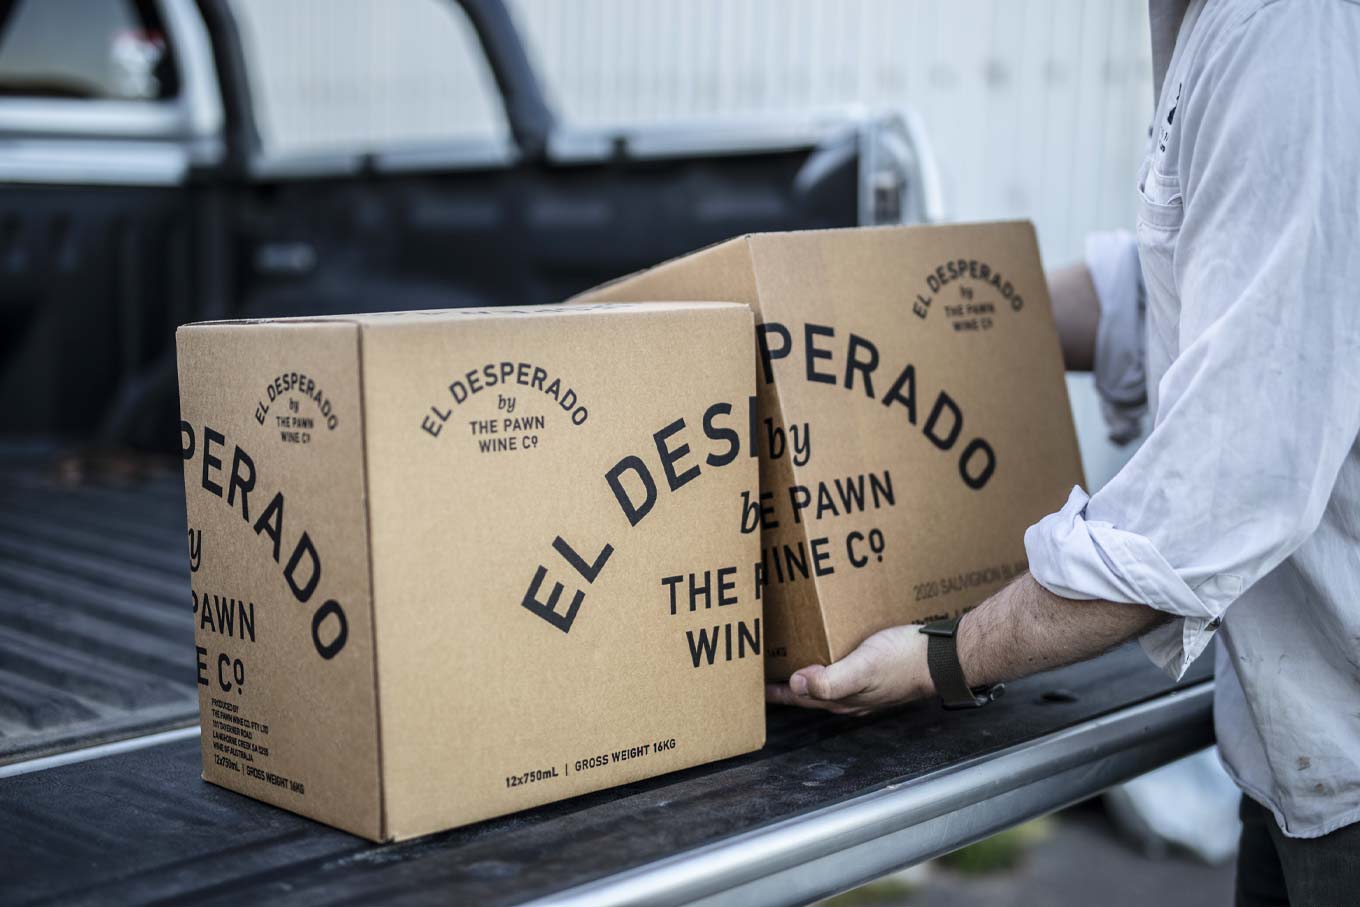 The Pawn Wine Co—El Desperado Range Cartons